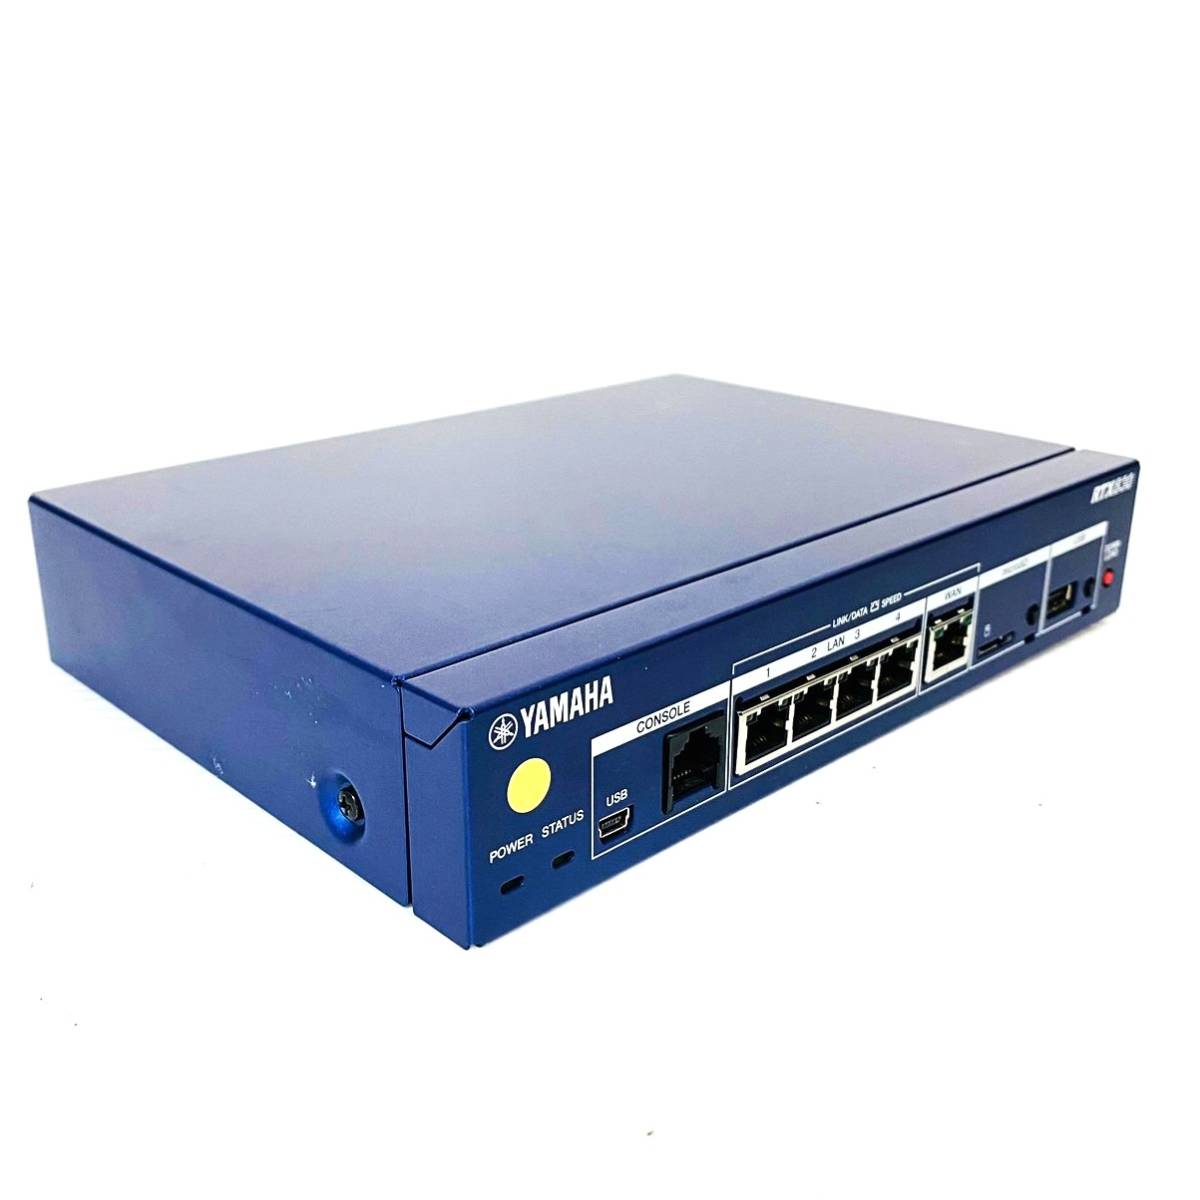 863【通電OK】YAMAHA RTX830 ギガアクセス VPN ルーター 小規模拠点向け マルチポイントトンネル LANマップ ネットワーク 通信 機器 ヤマハ_画像4